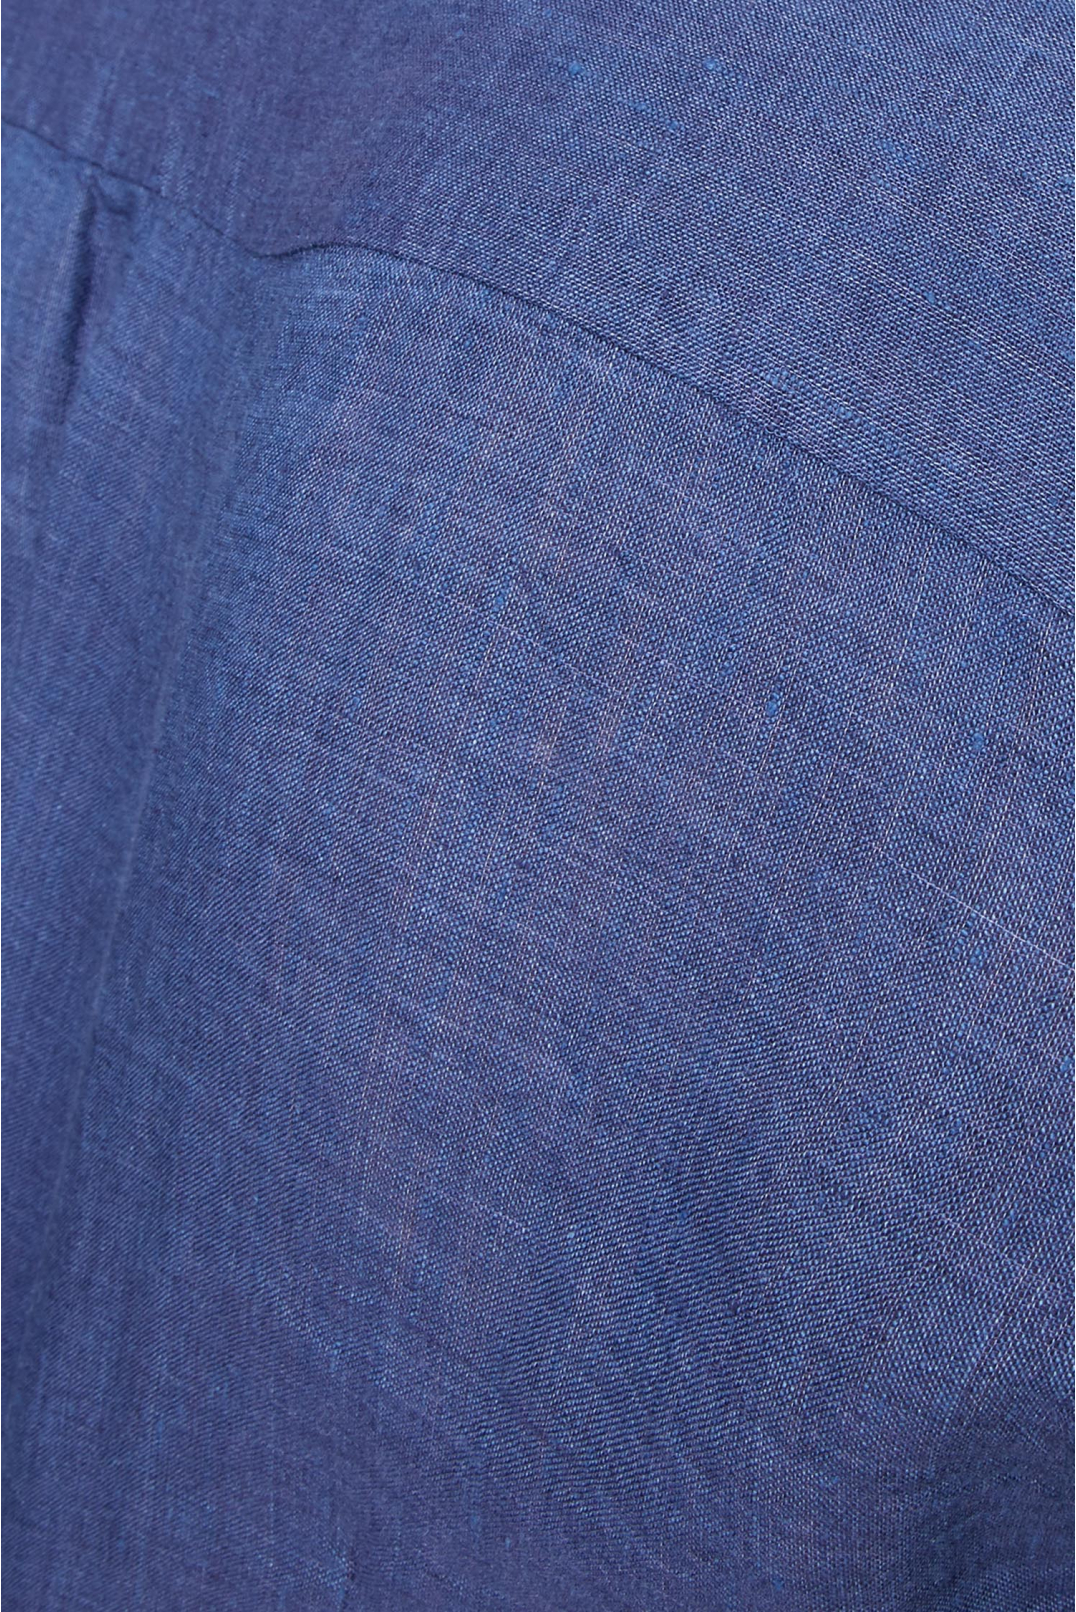 Чоловіча темно-синя лляна сорочка - 4